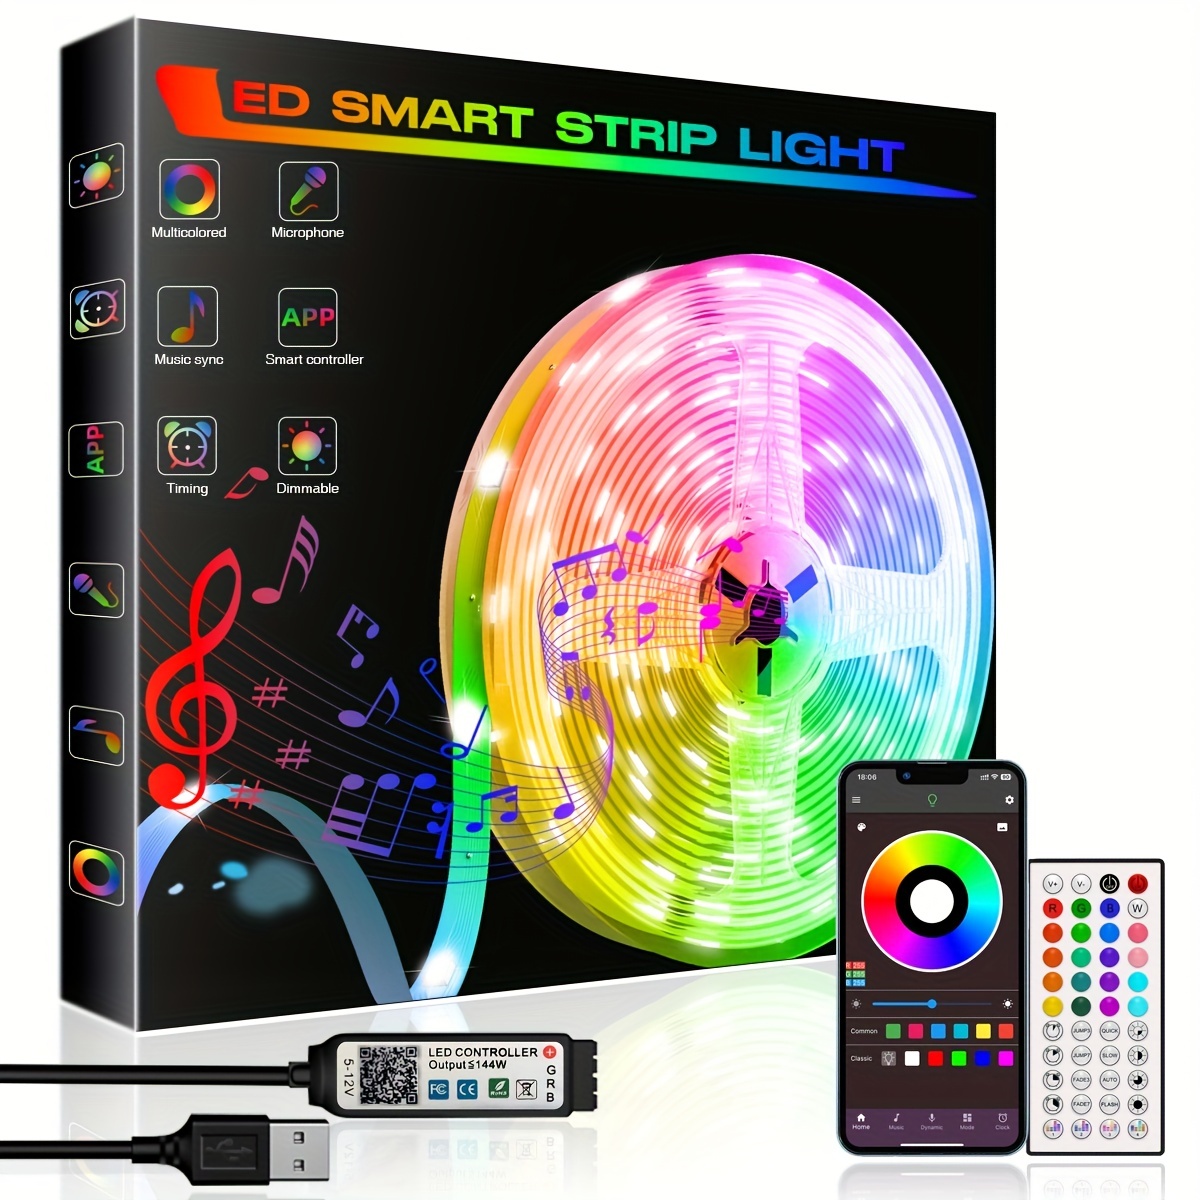 1 capuchon lumineux LED avec 7 couleurs lumineuses LDC et chargement USB  pour fête, événement de Noël, vacances. , Choix idéal pour les cadeaux -  Temu France